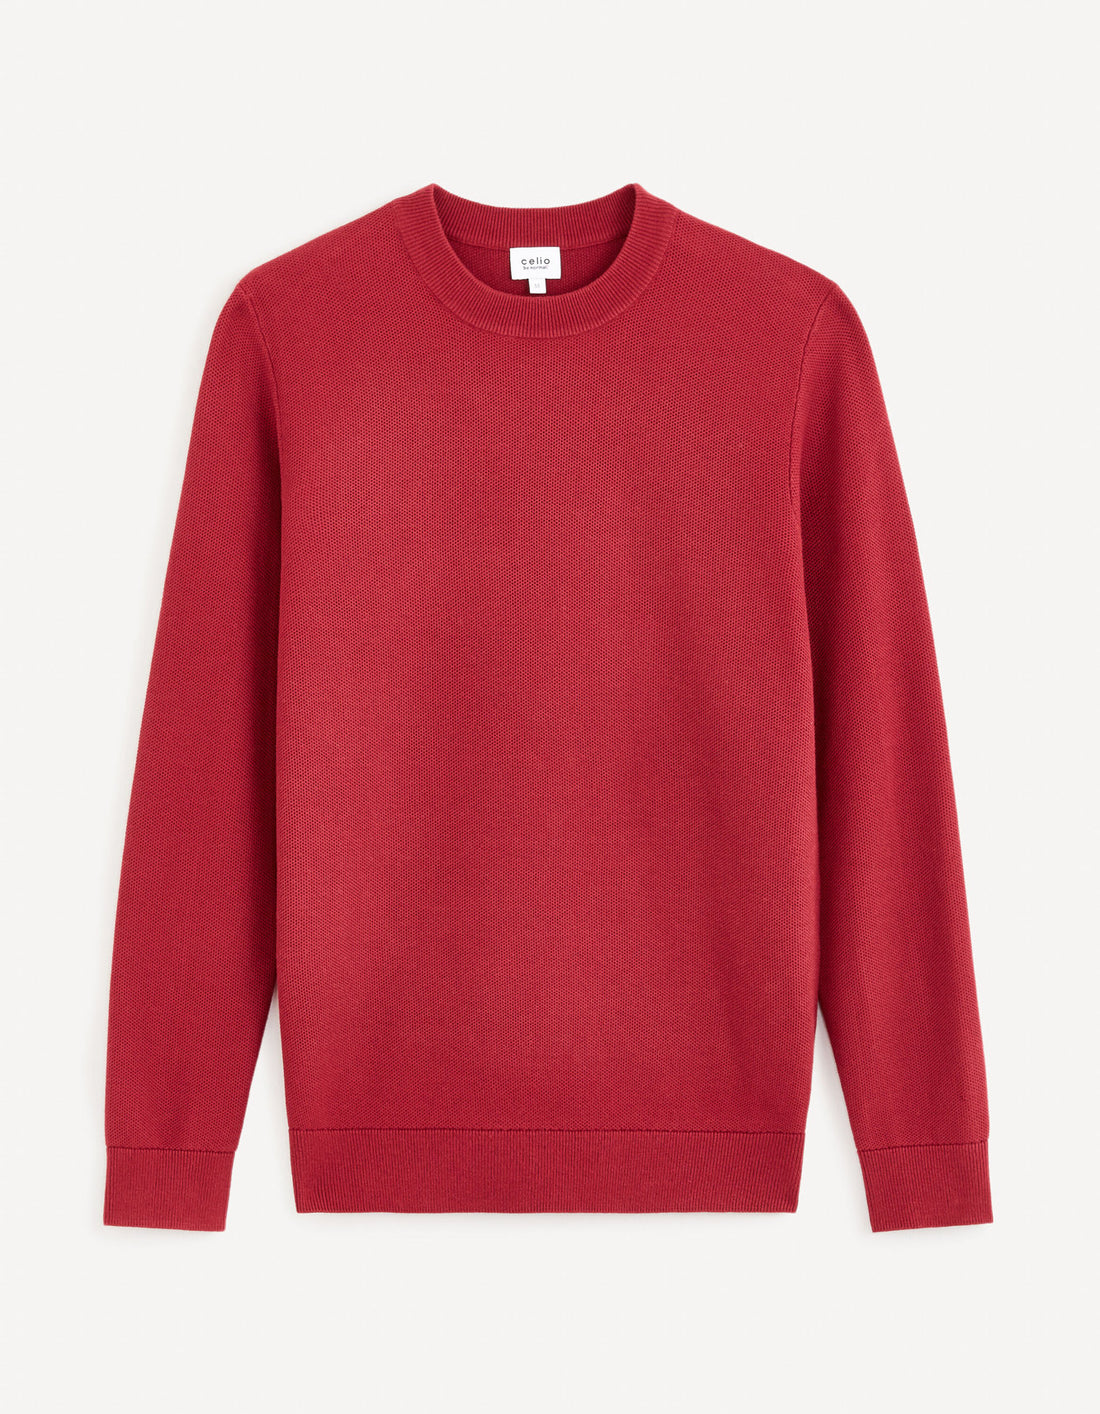 100% Cotton Round Neck Sweater - Burgundy_BEPIC_BURGUNDY_02